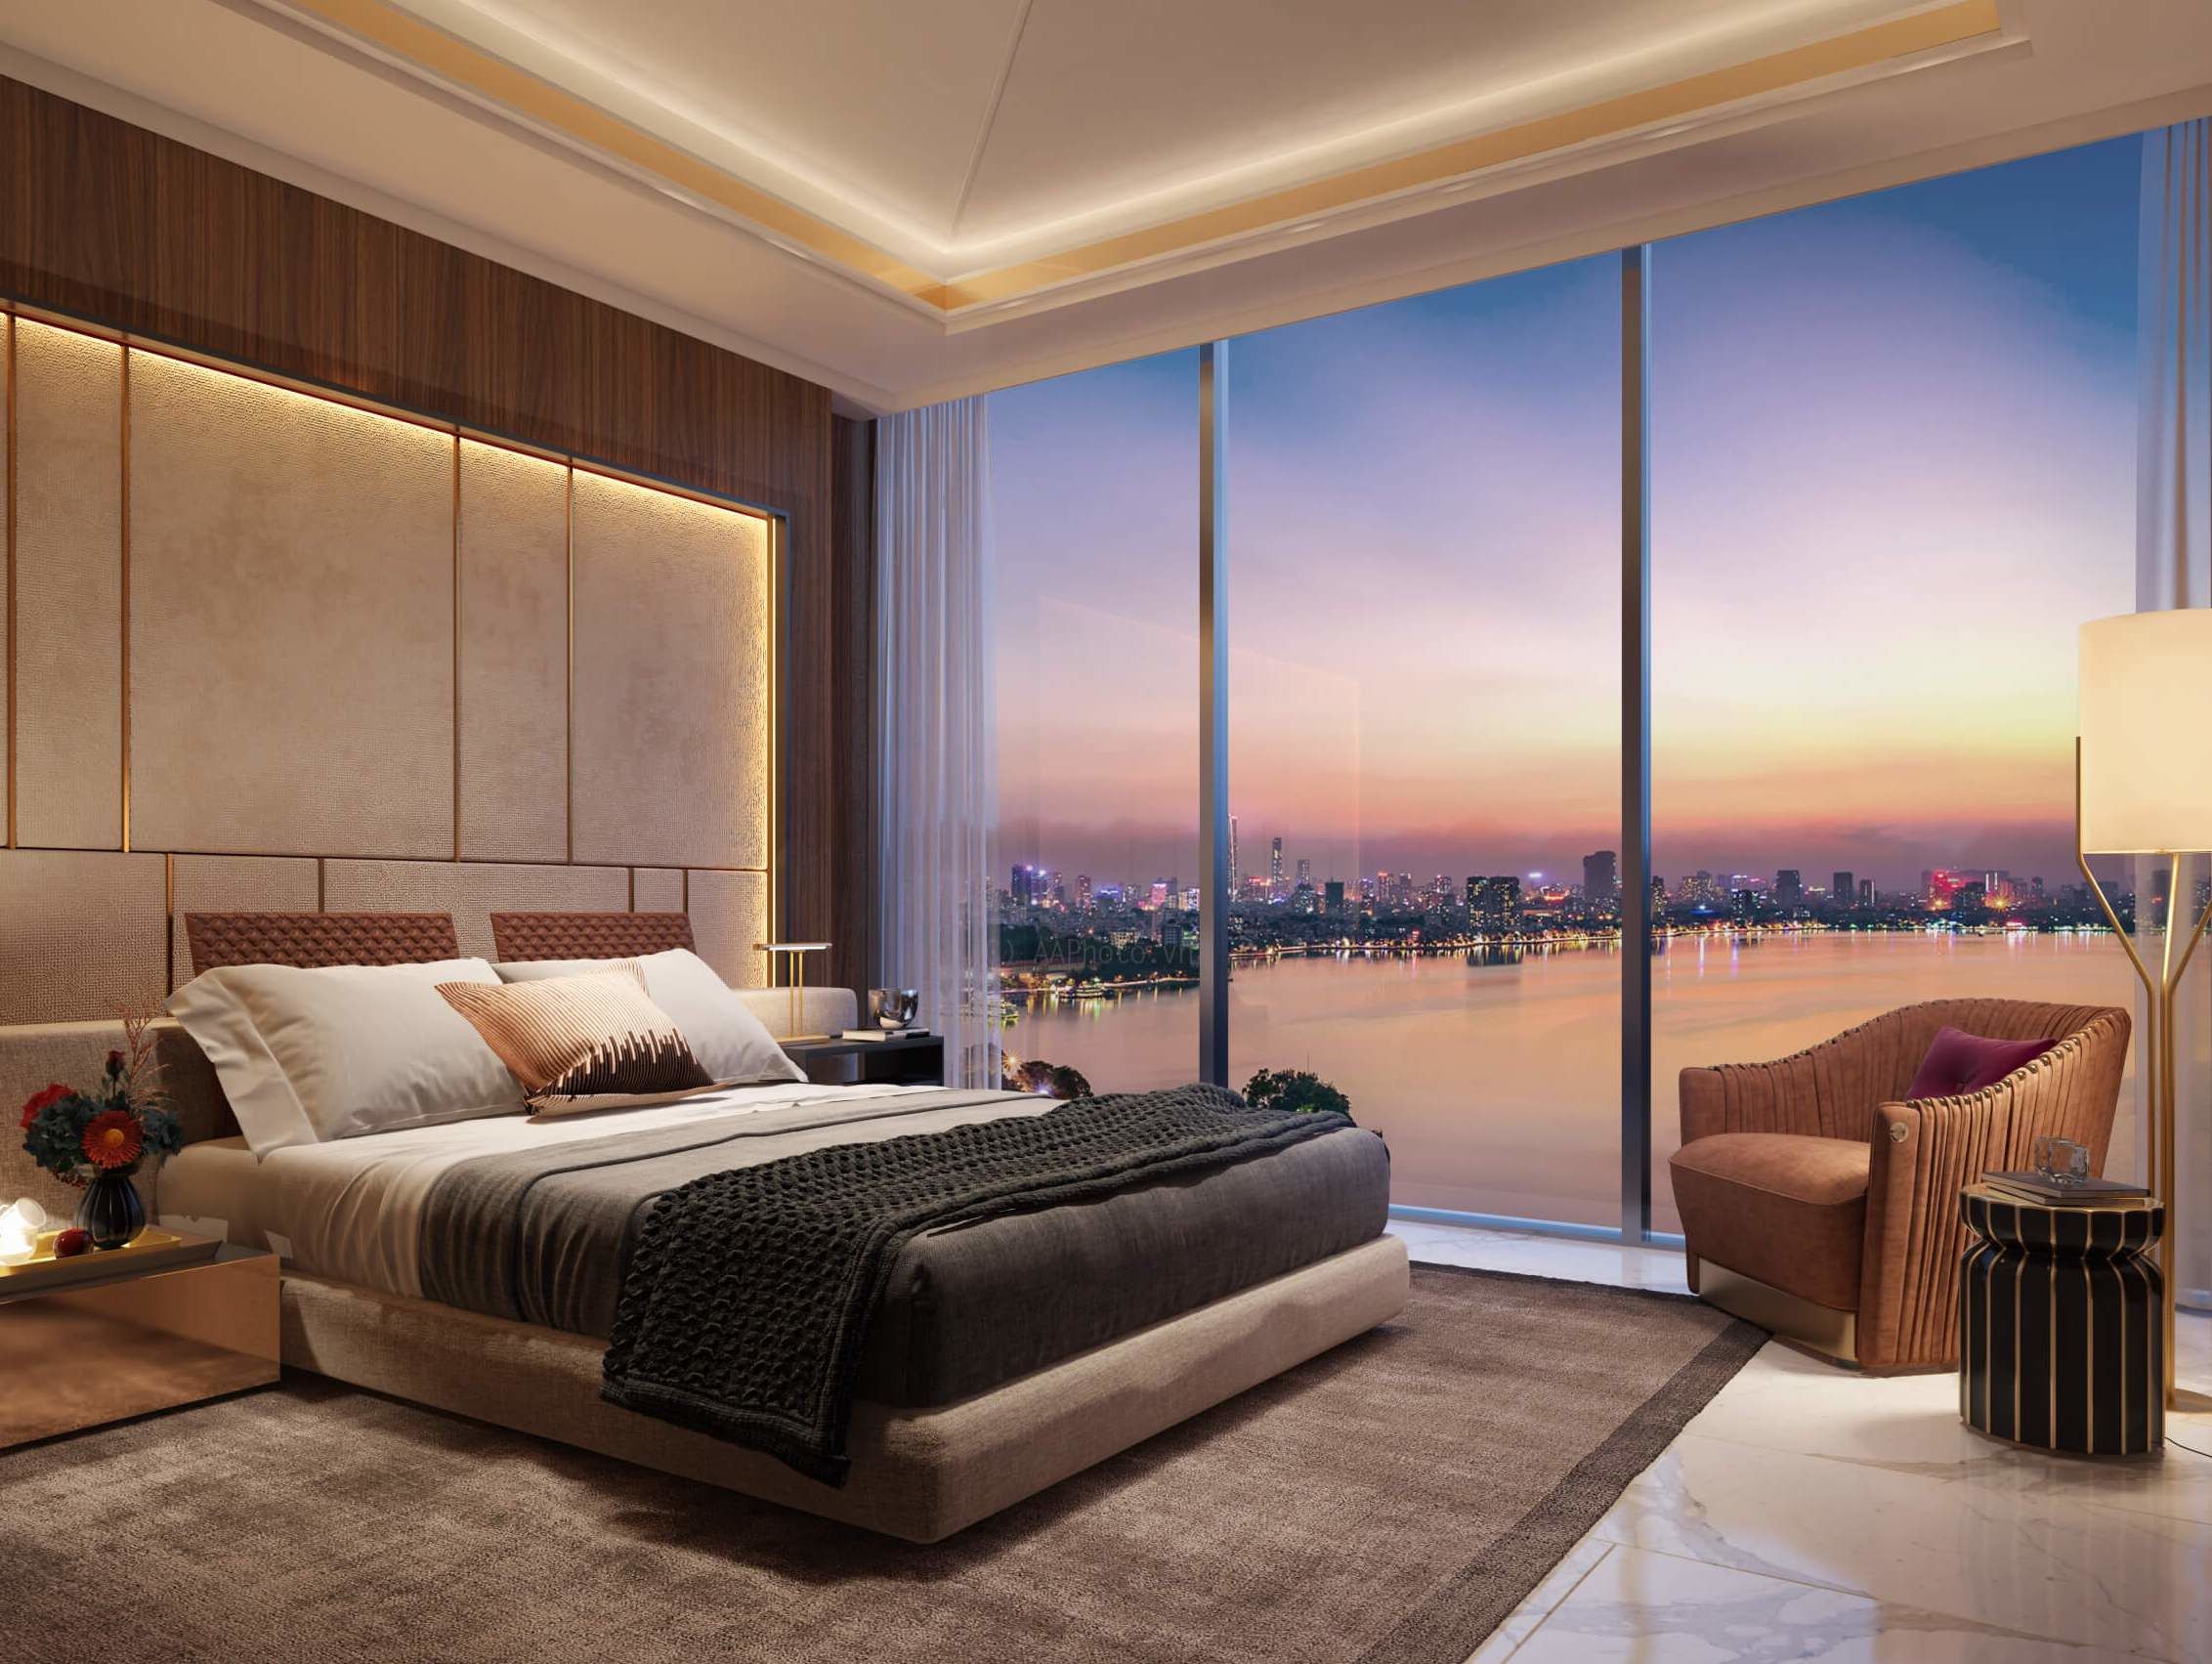 View phòng ngủ tại căn hộ Sun Grand City Ancora Lương Yên